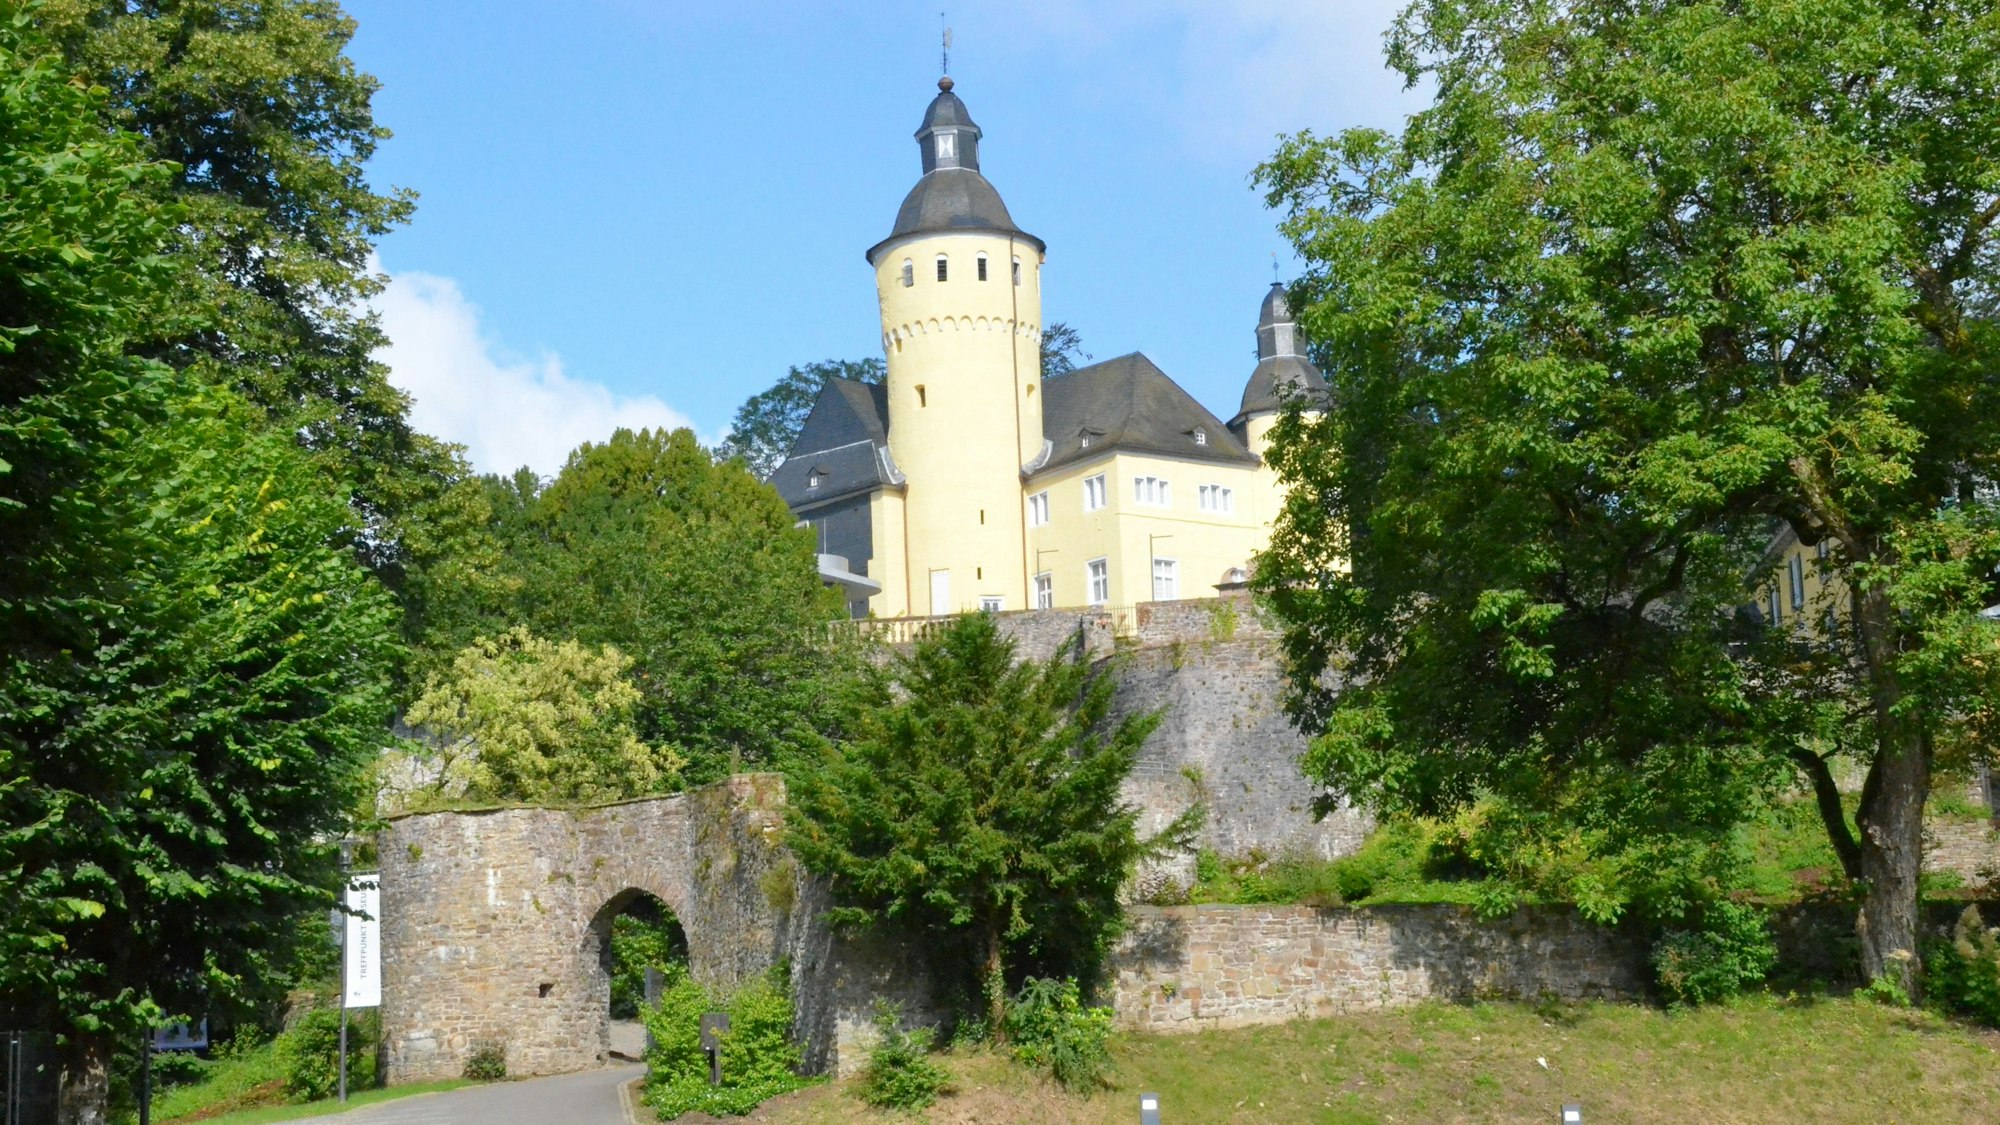 Ein hellgelbes Schloss mit Turm, das von einer hohen Mauer umgeben ist.